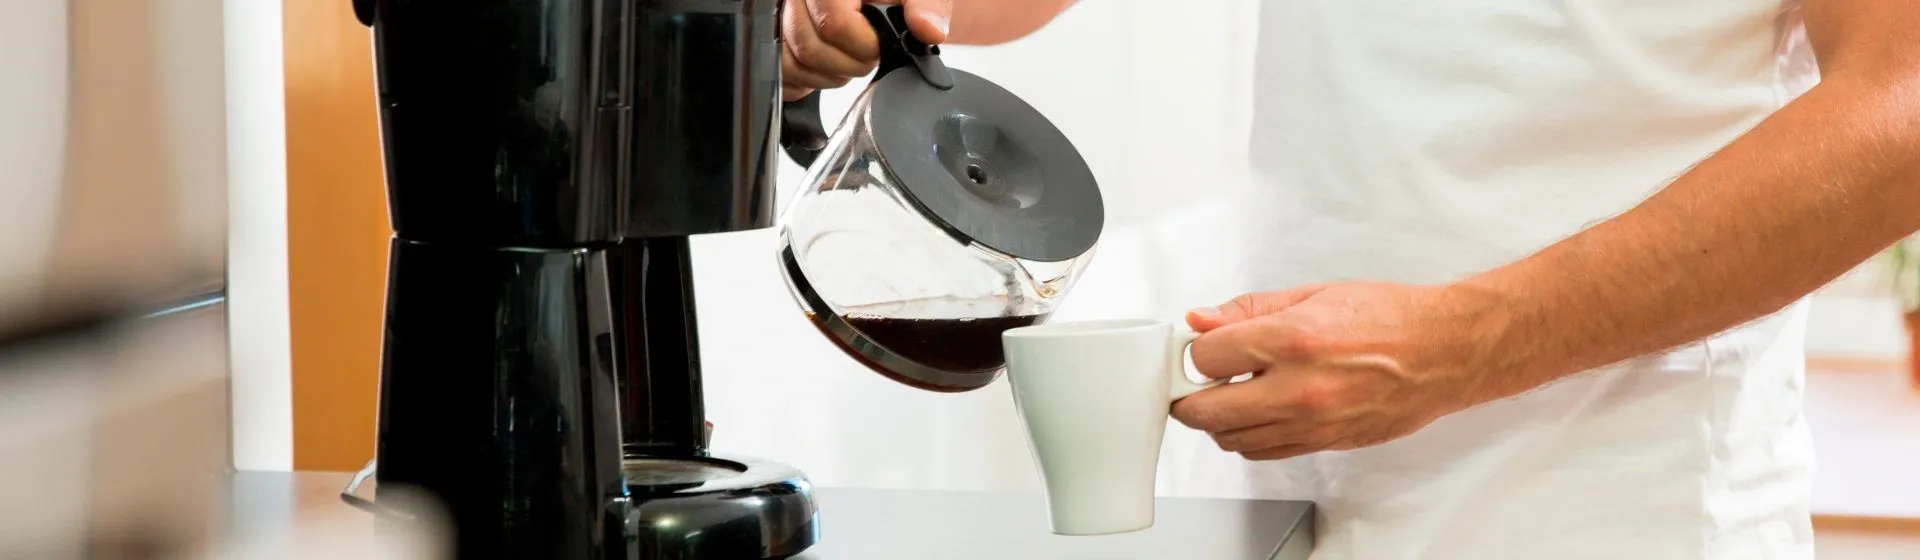 Como fazer um bom café: confira as dicas e o tutorial